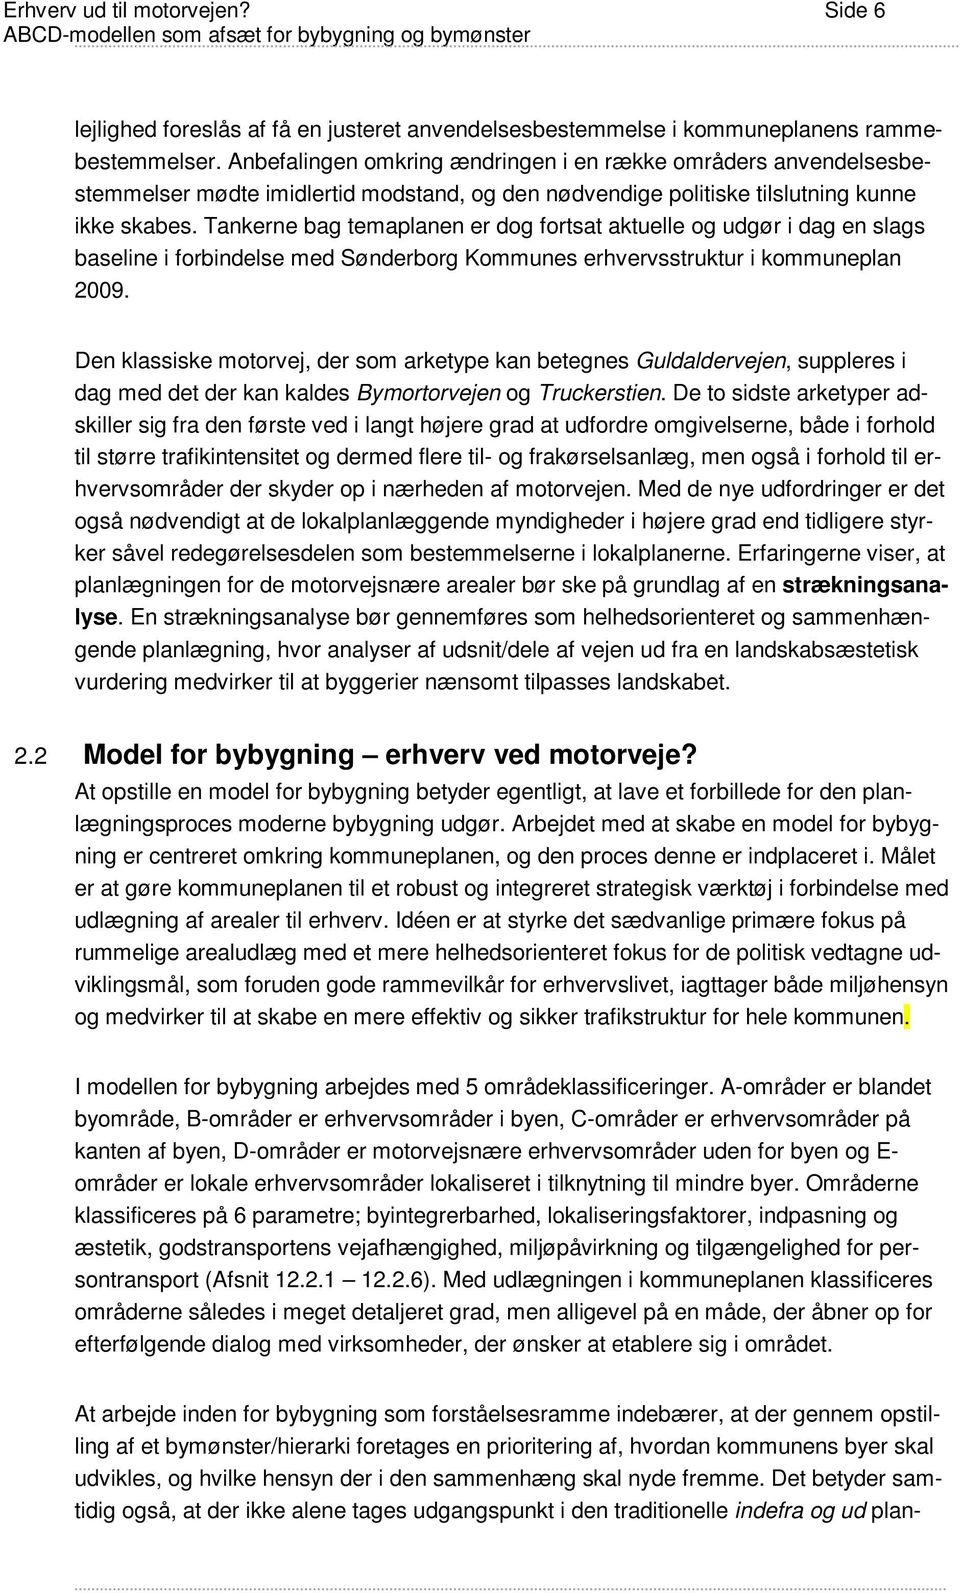 Tankerne bag temaplanen er dog fortsat aktuelle og udgør i dag en slags baseline i forbindelse med Sønderborg Kommunes erhvervsstruktur i kommuneplan 2009.